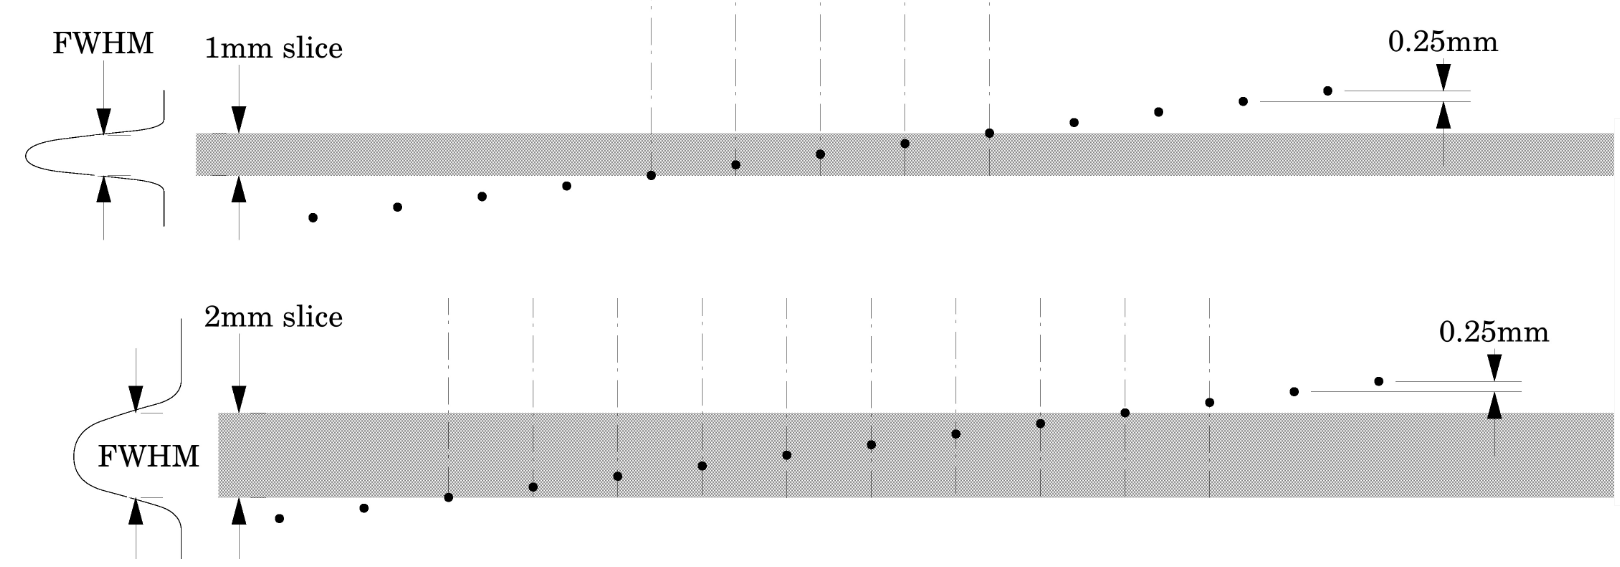 Рис. 14. Схема формирования изображения наклонной последовательности шариков для слоев толщины 2мм и 1мм, адаптировано из [Catphan700]